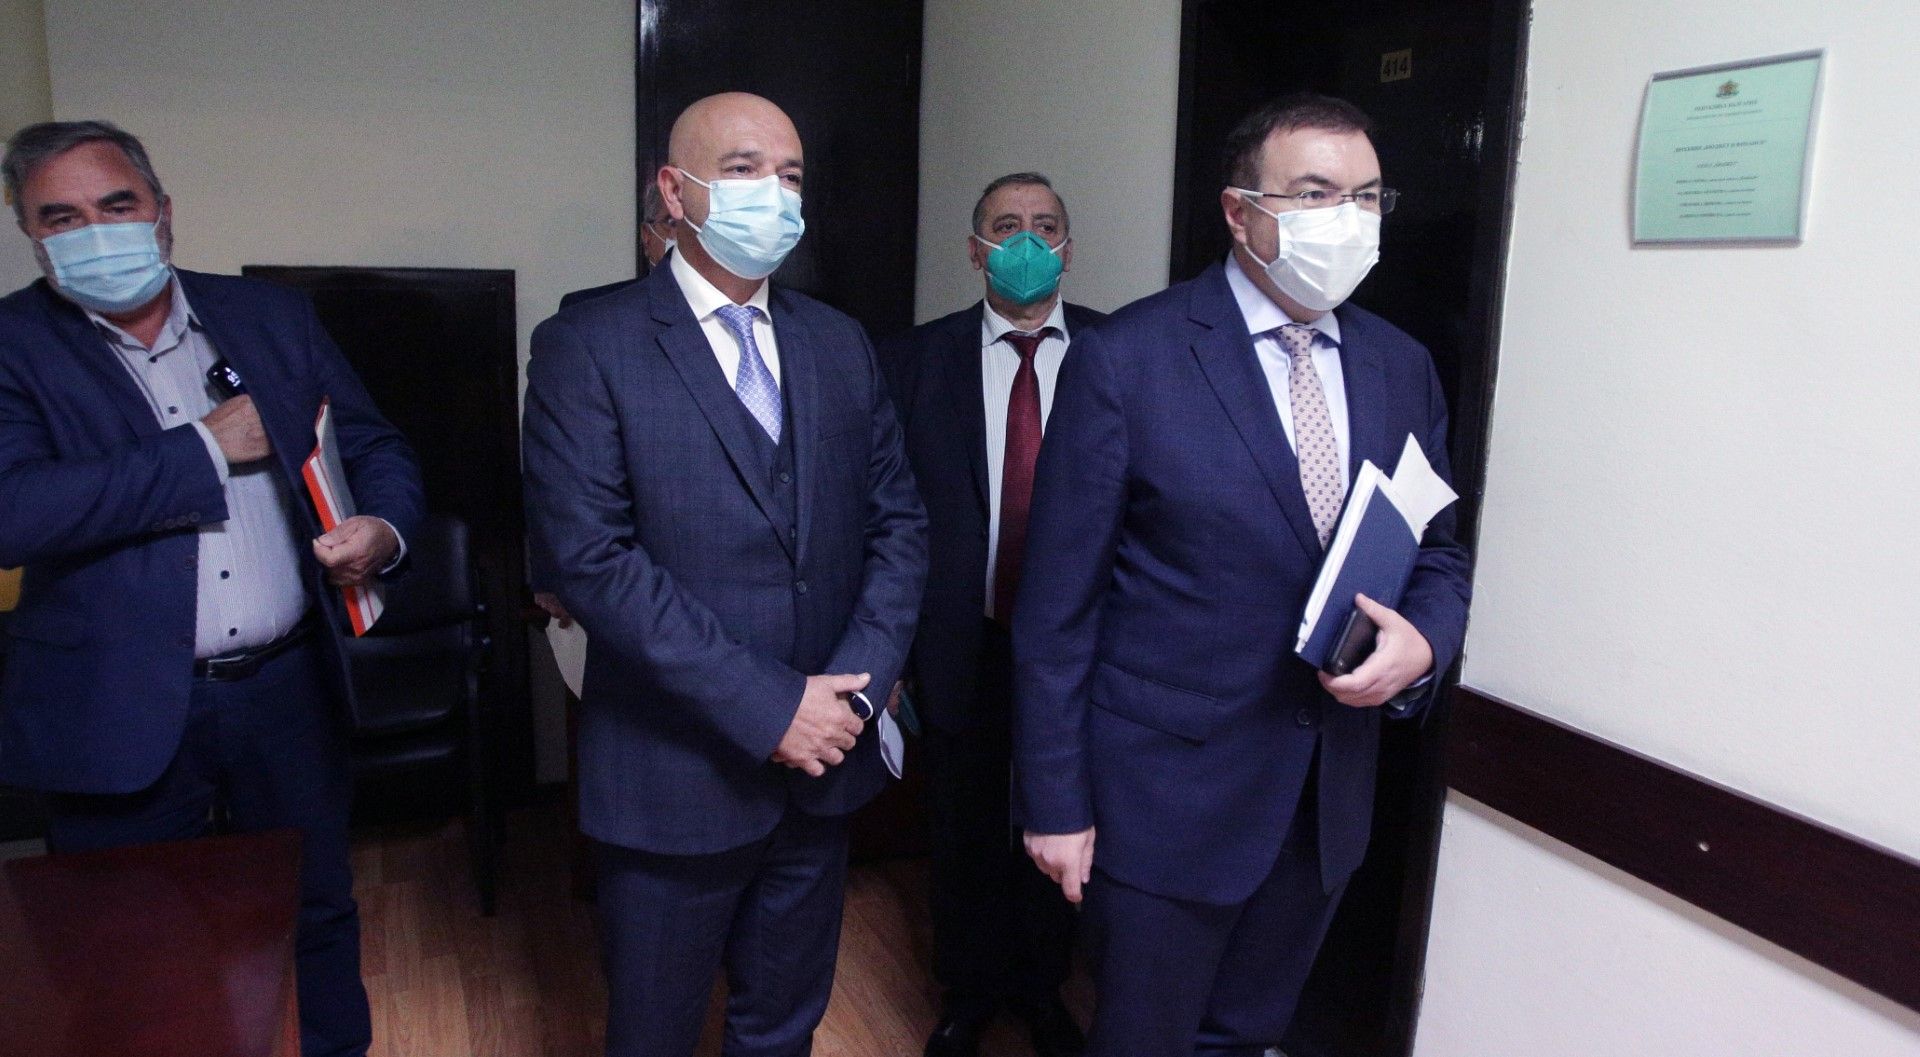 1 октомври. Министърът на здравеопазването Костадин Ангелов (вдясно) и представители на Националния оперативен щаб дадоха брифинг за разпространението на COVID-19 в България - вляво е доц. Ангел Кунчев, в центъра е ген. Венцислав Мутафчийски 